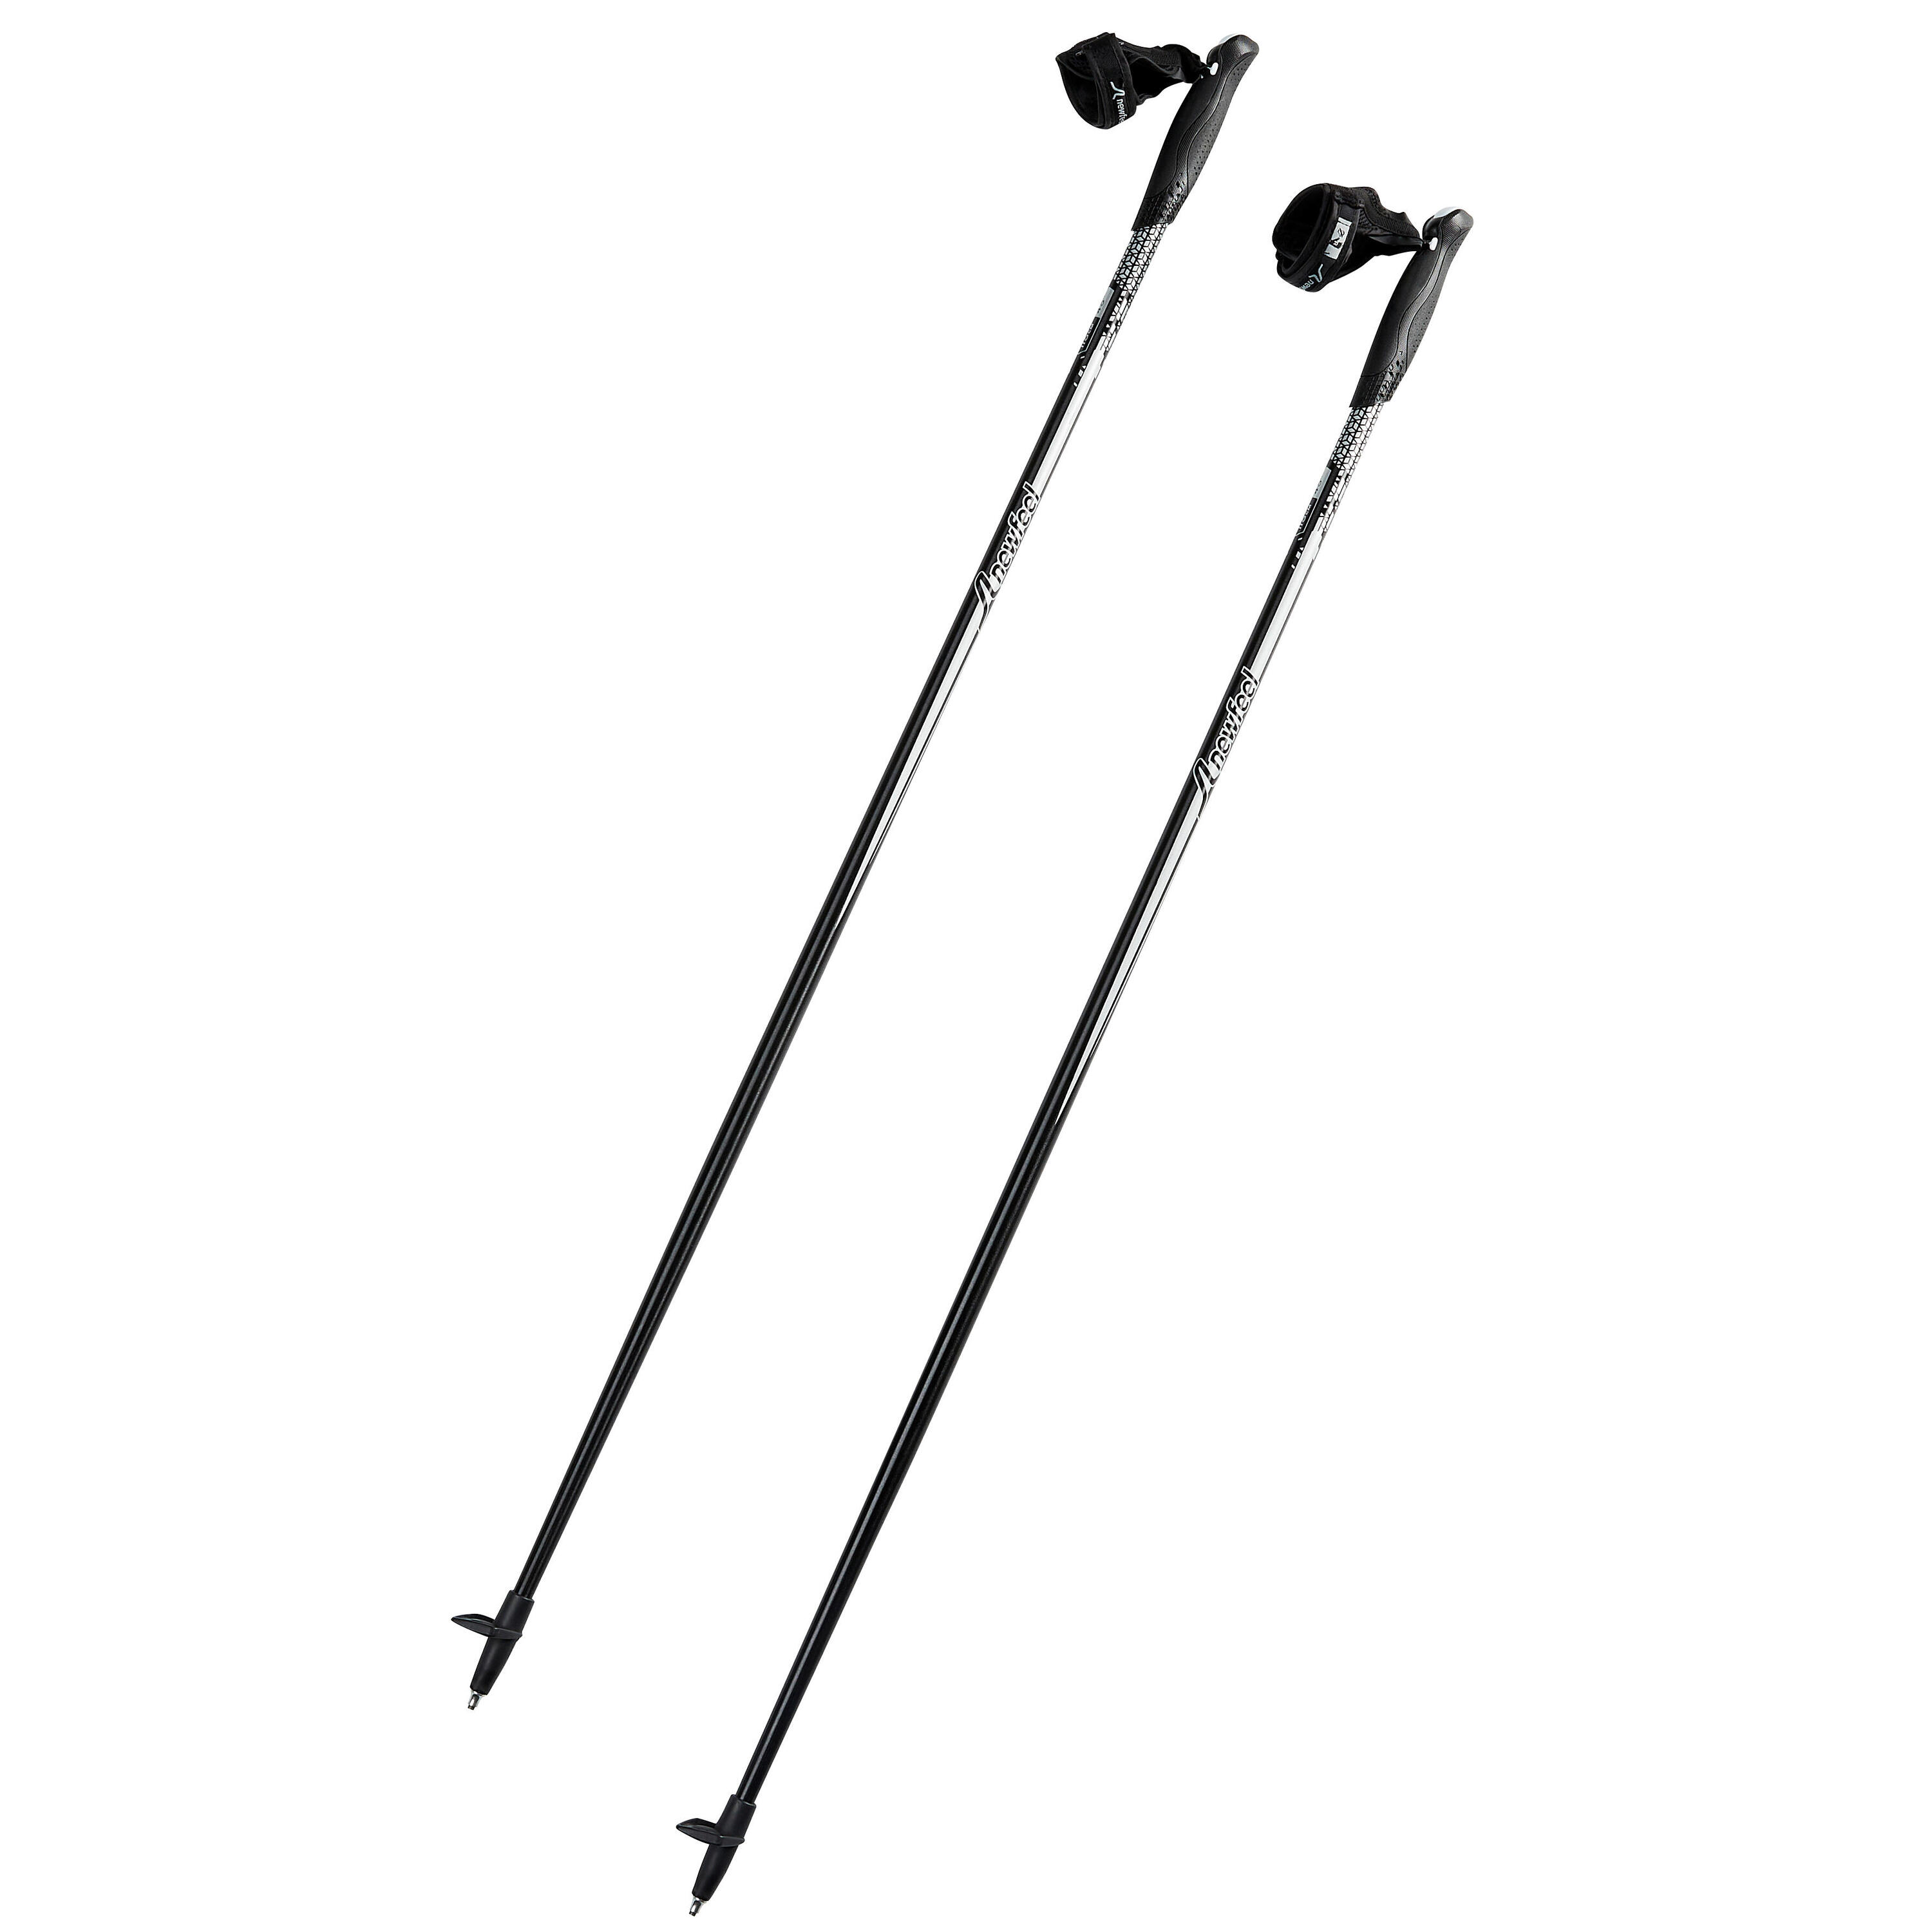 телескопические двухсекционные палки btrace nw fast p0529 для скандинавской ходьбы Палки для скандинавской ходьбы Newfeel NW P100, черный/серый